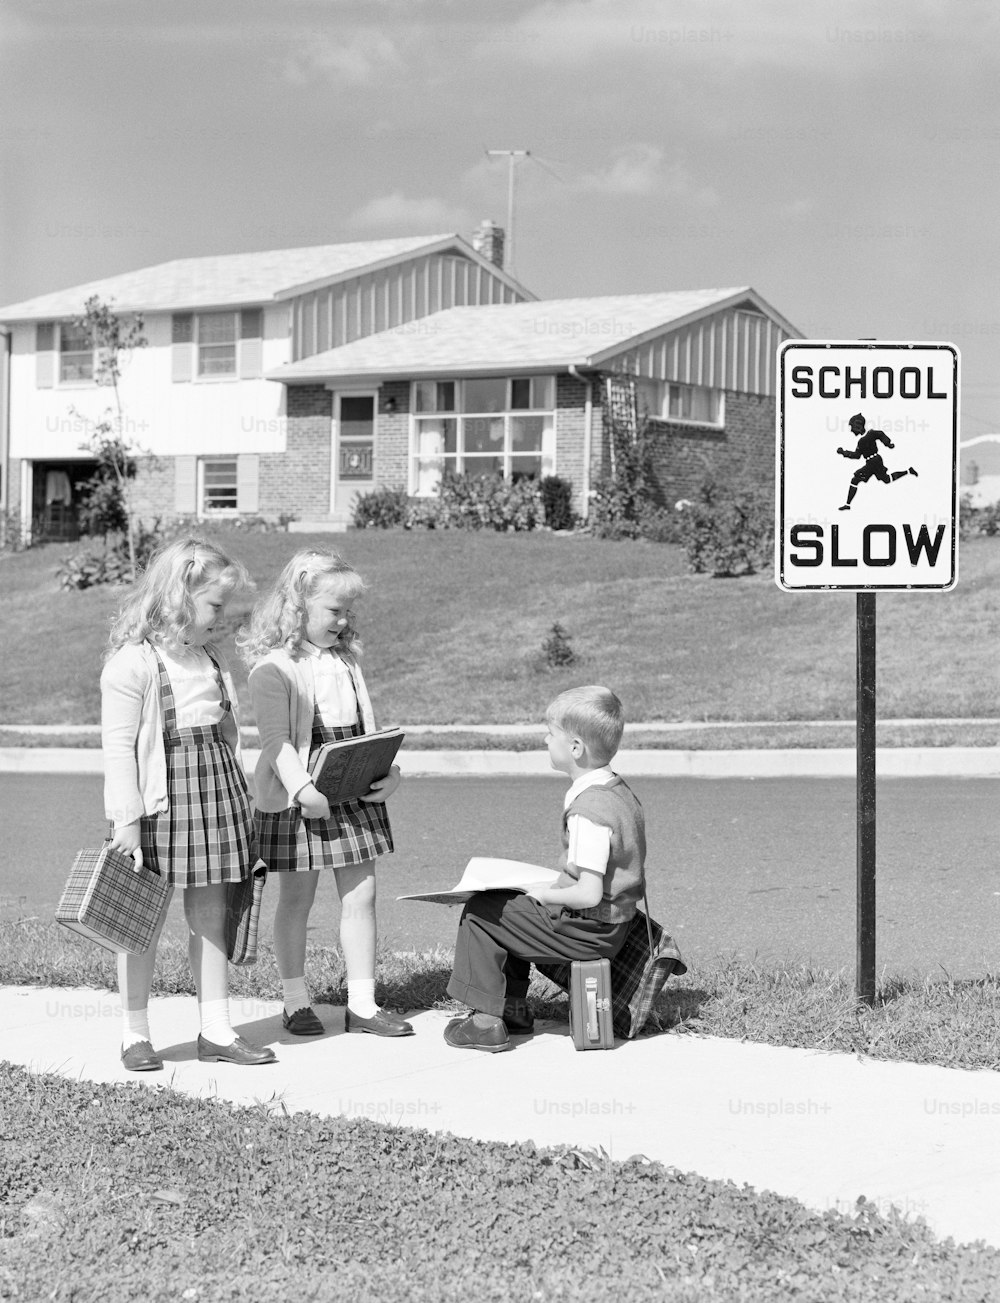 STATI UNITI - 1950 CIRCA: Due ragazze che camminano verso la scuola, ragazzo seduto sul cestino del pranzo.